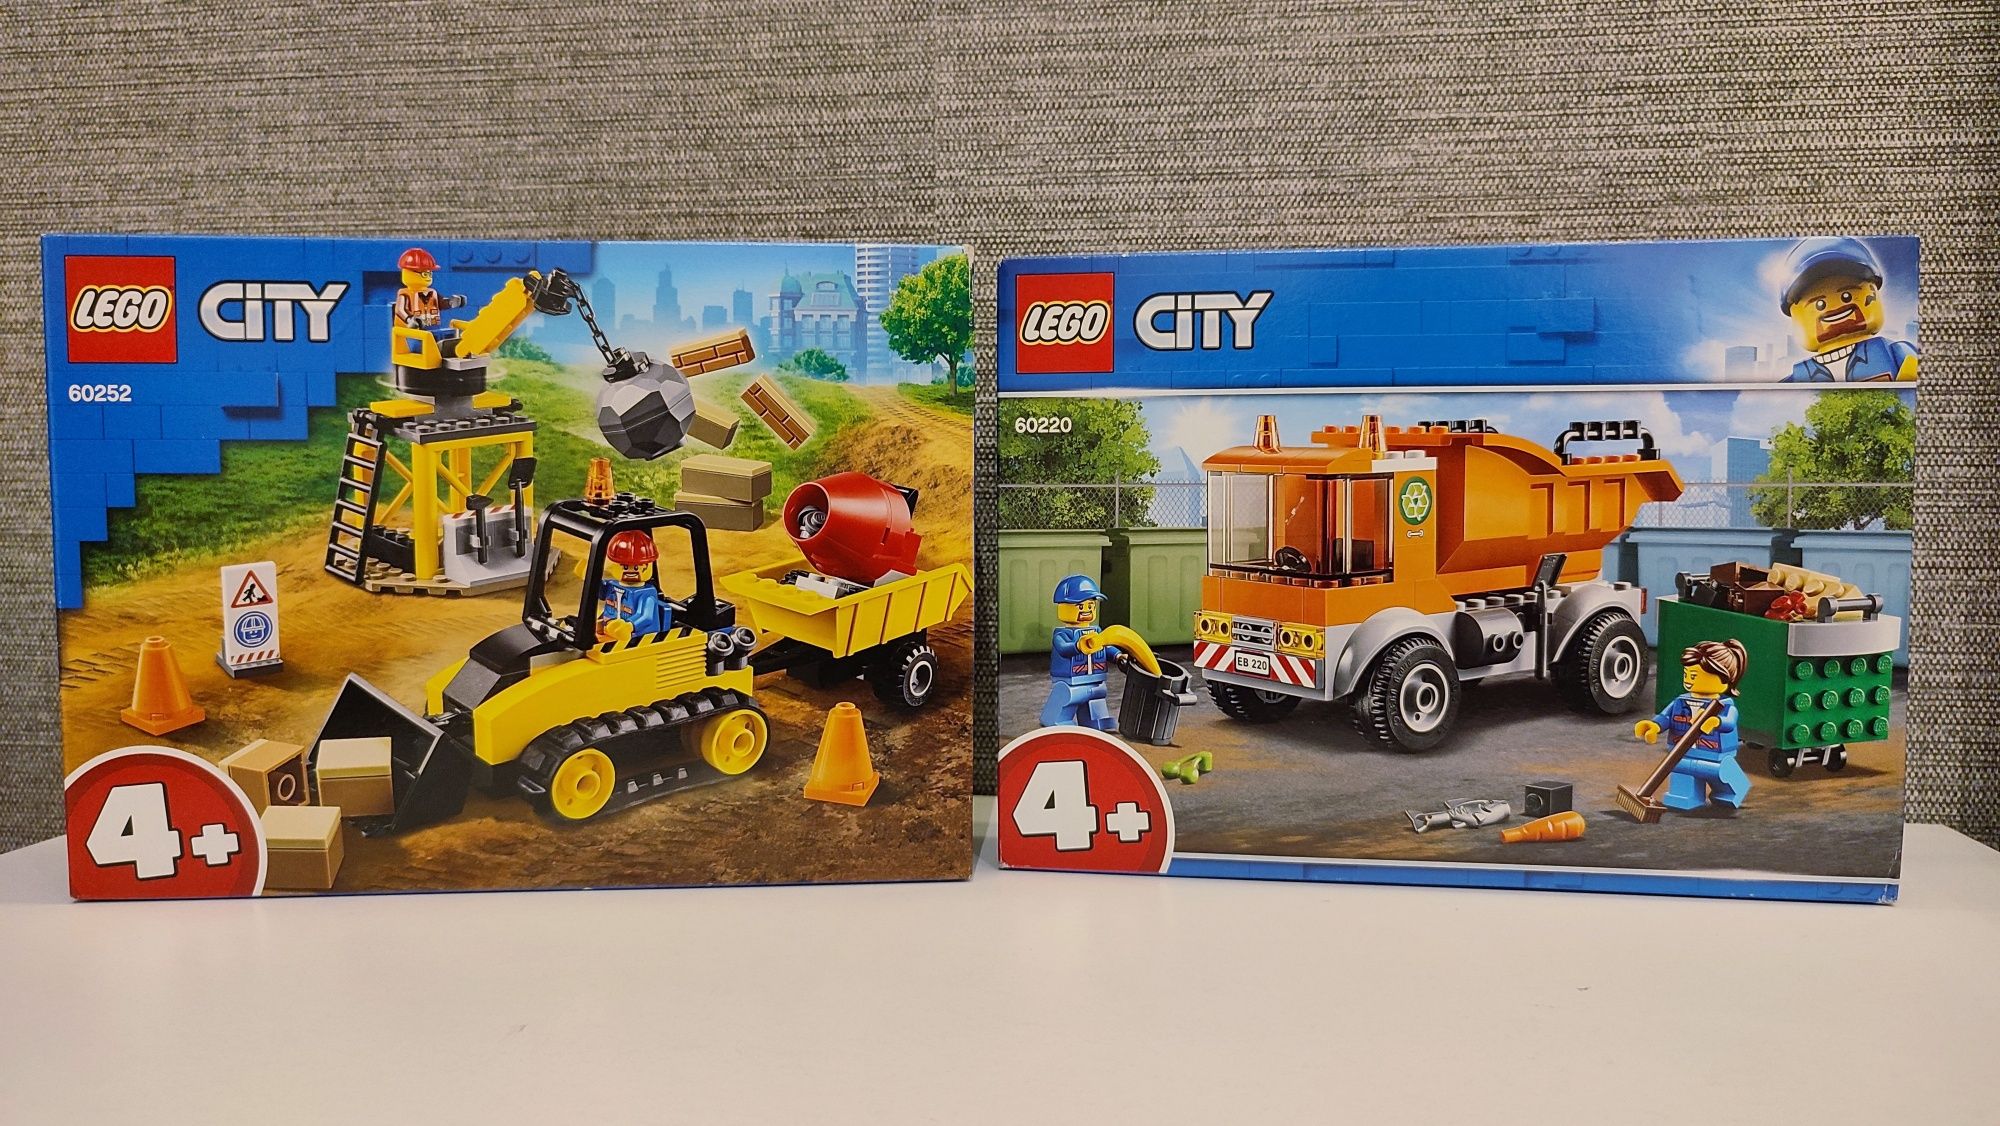 Раритет конструктор Lego City 4+ Мусоровоз, Строительный бульдозер